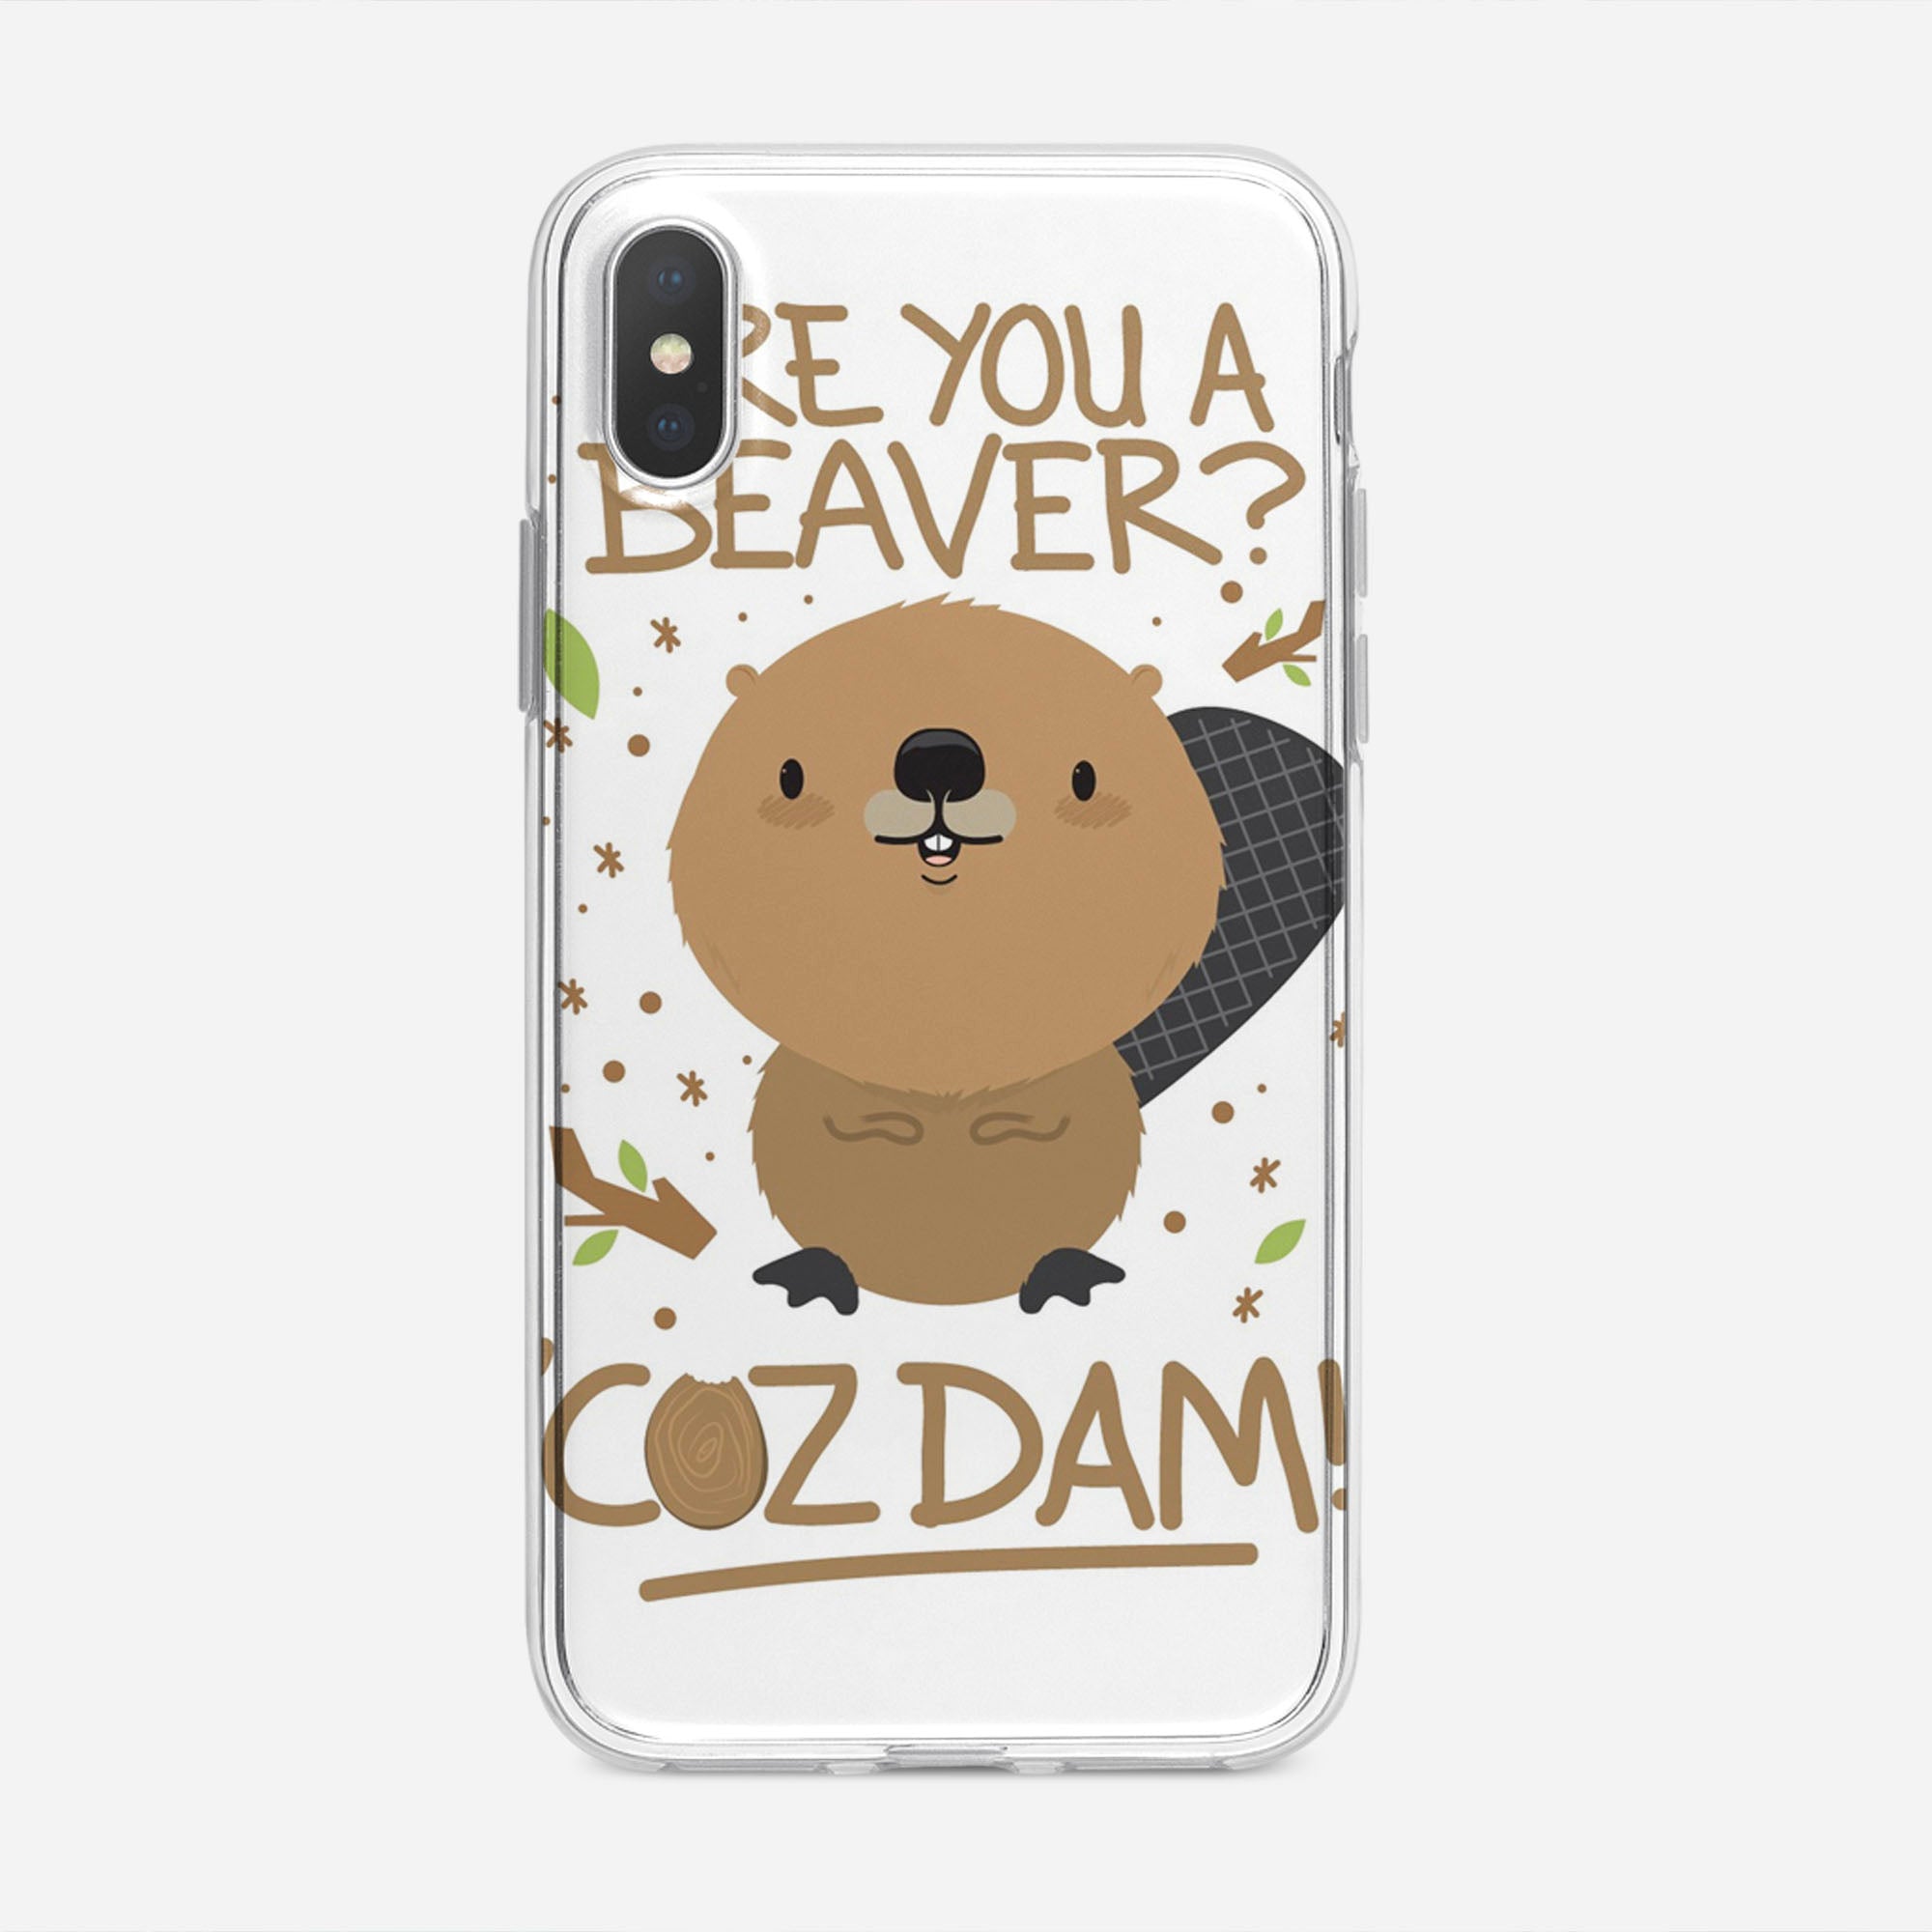 يو بي تي Are You A Beaver Cuz Dam iPhone XS Max Case coque iphone xs Are You Beaver Cuz Dam